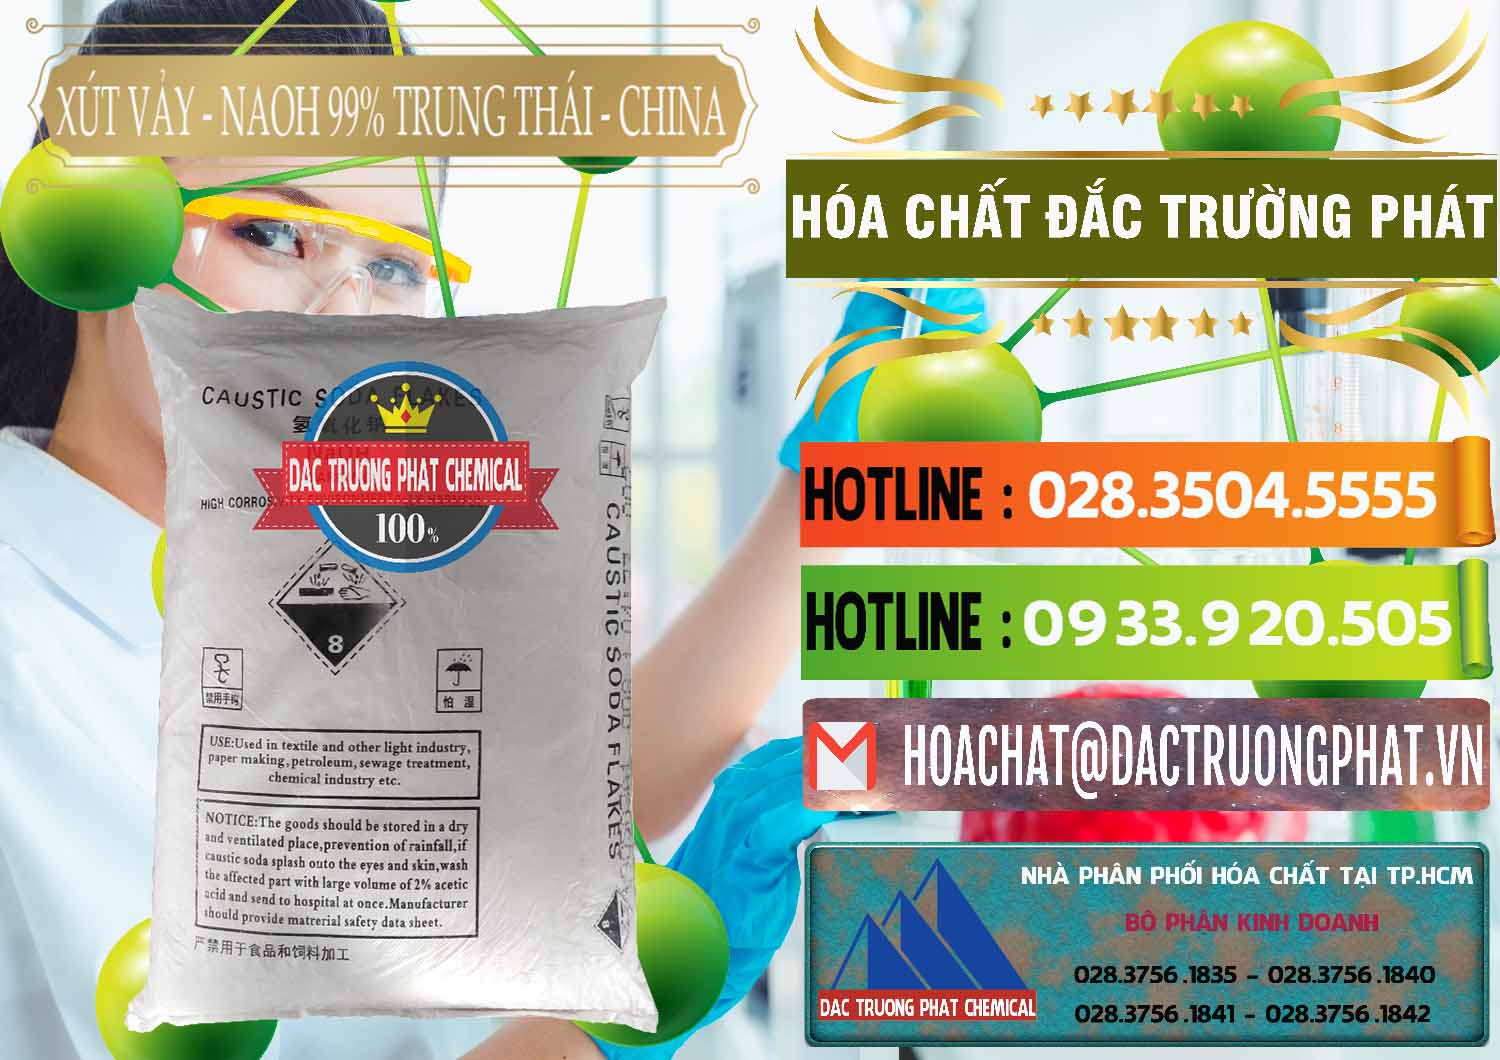 Nơi chuyên bán _ cung ứng Xút Vảy - NaOH Vảy 99% Trung Thái China Trung Quốc - 0176 - Đơn vị chuyên bán _ cung cấp hóa chất tại TP.HCM - cungcaphoachat.com.vn